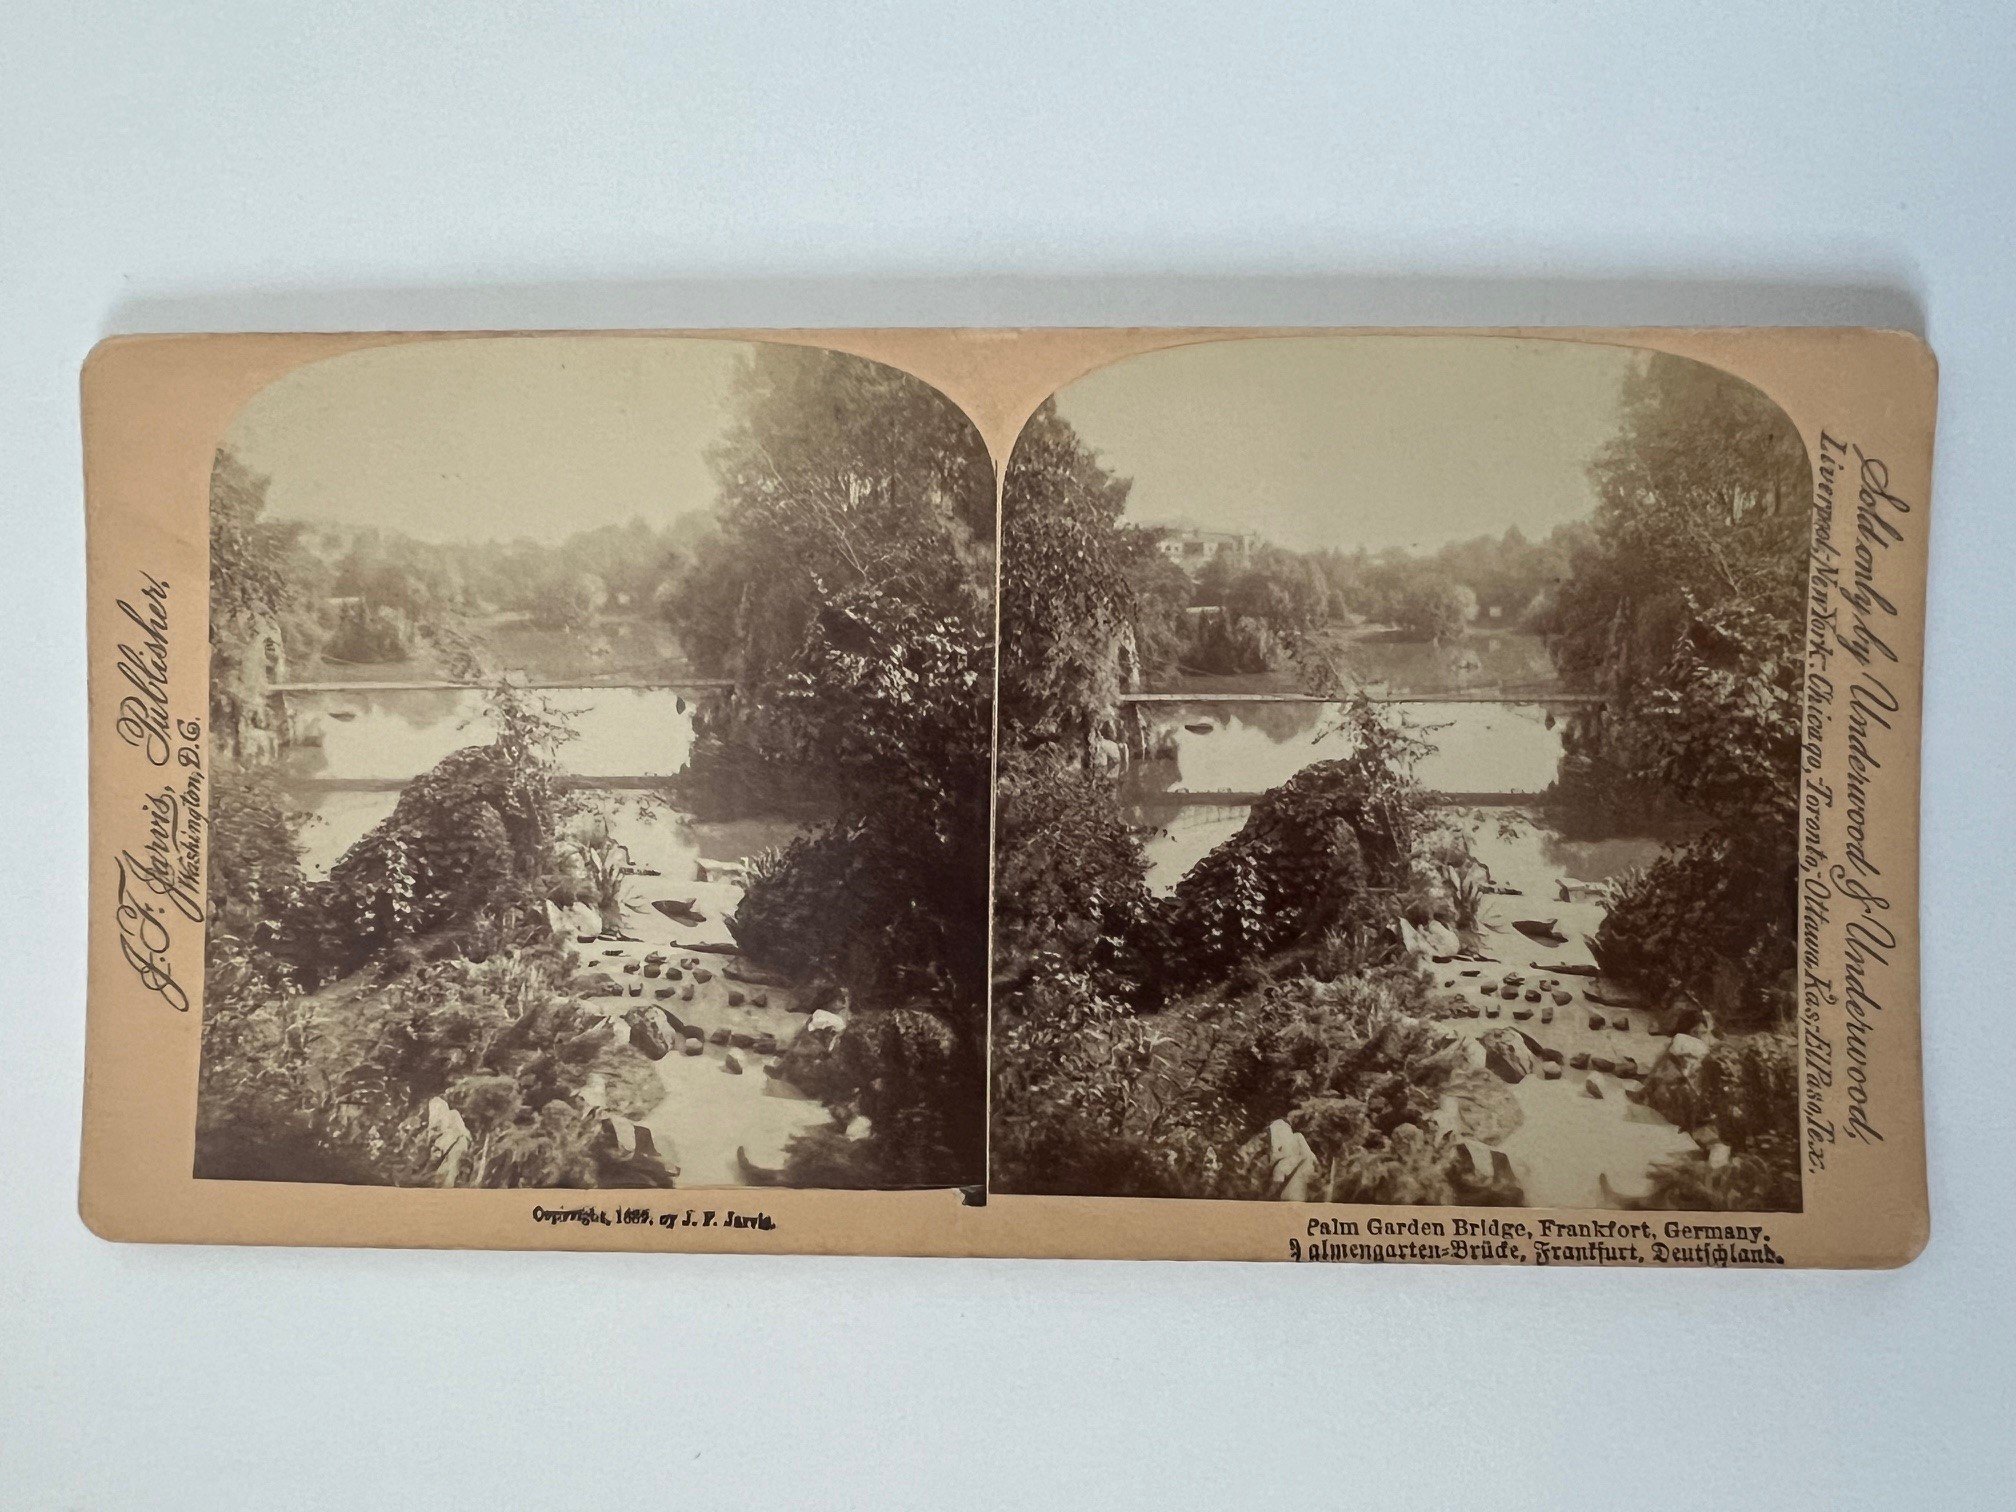 Stereobild, Underwood & Underwood, Frankfurt, Palm Garden Bridge, ca. 1889. (Taunus-Rhein-Main - Regionalgeschichtliche Sammlung Dr. Stefan Naas CC BY-NC-SA)